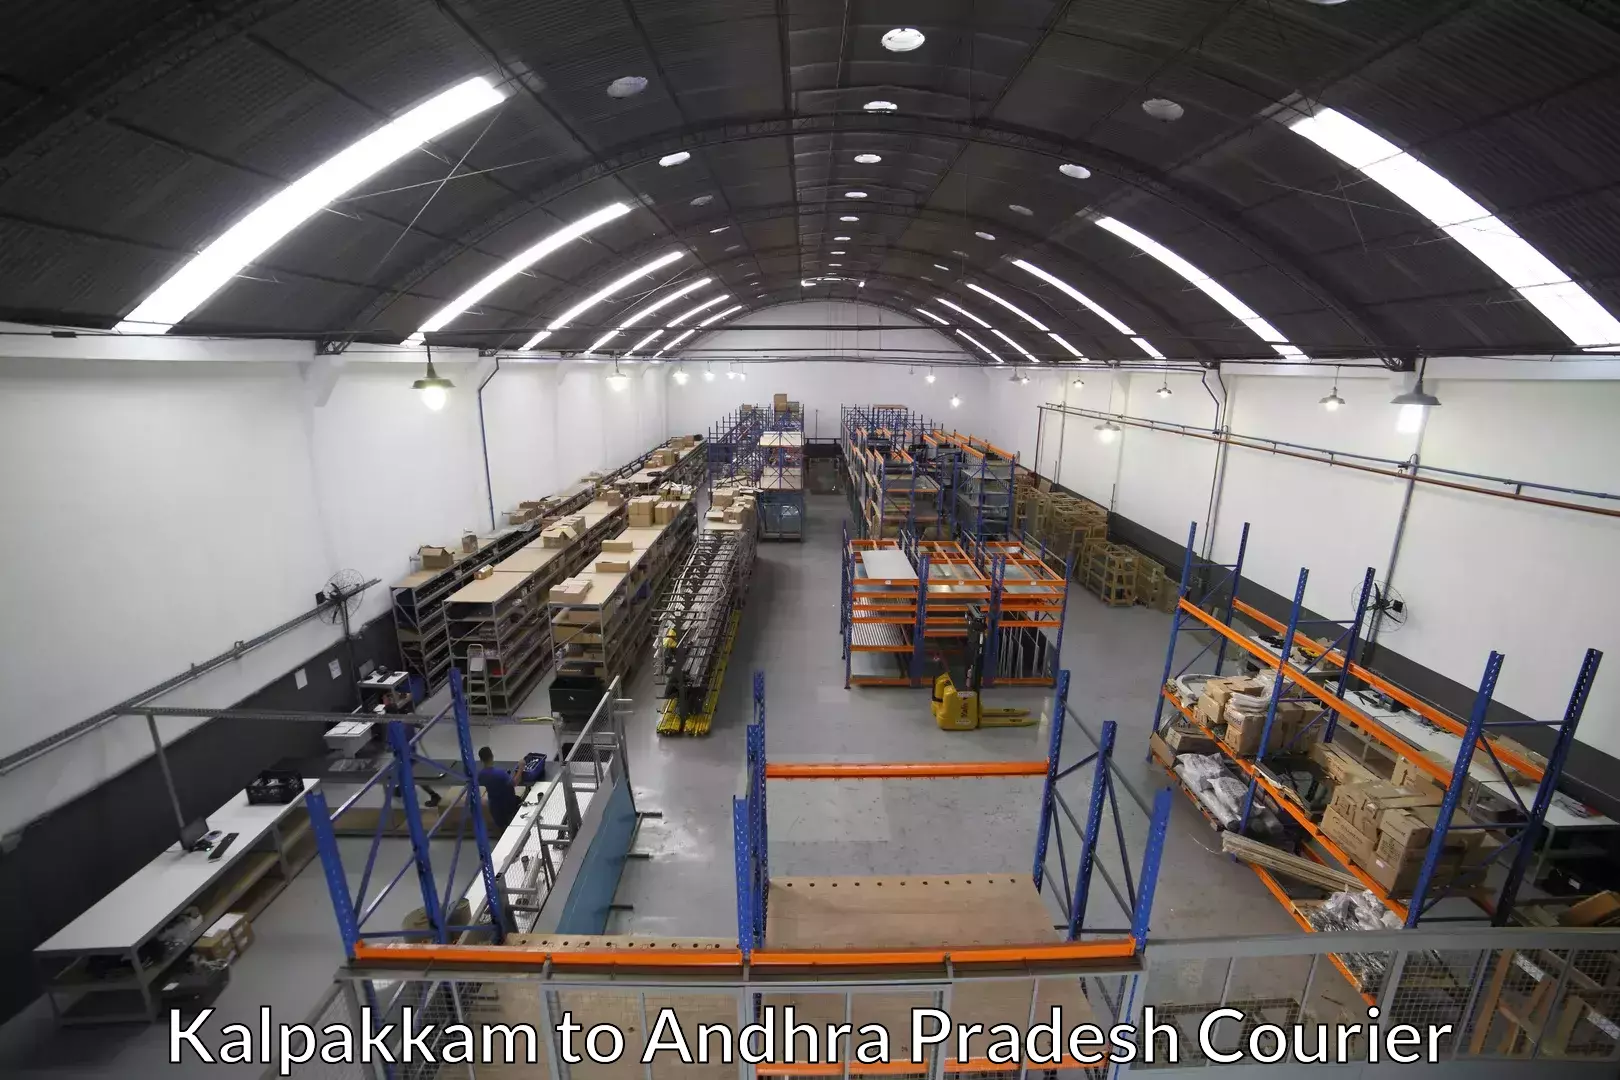 Professional packing services Kalpakkam to Andhra Pradesh